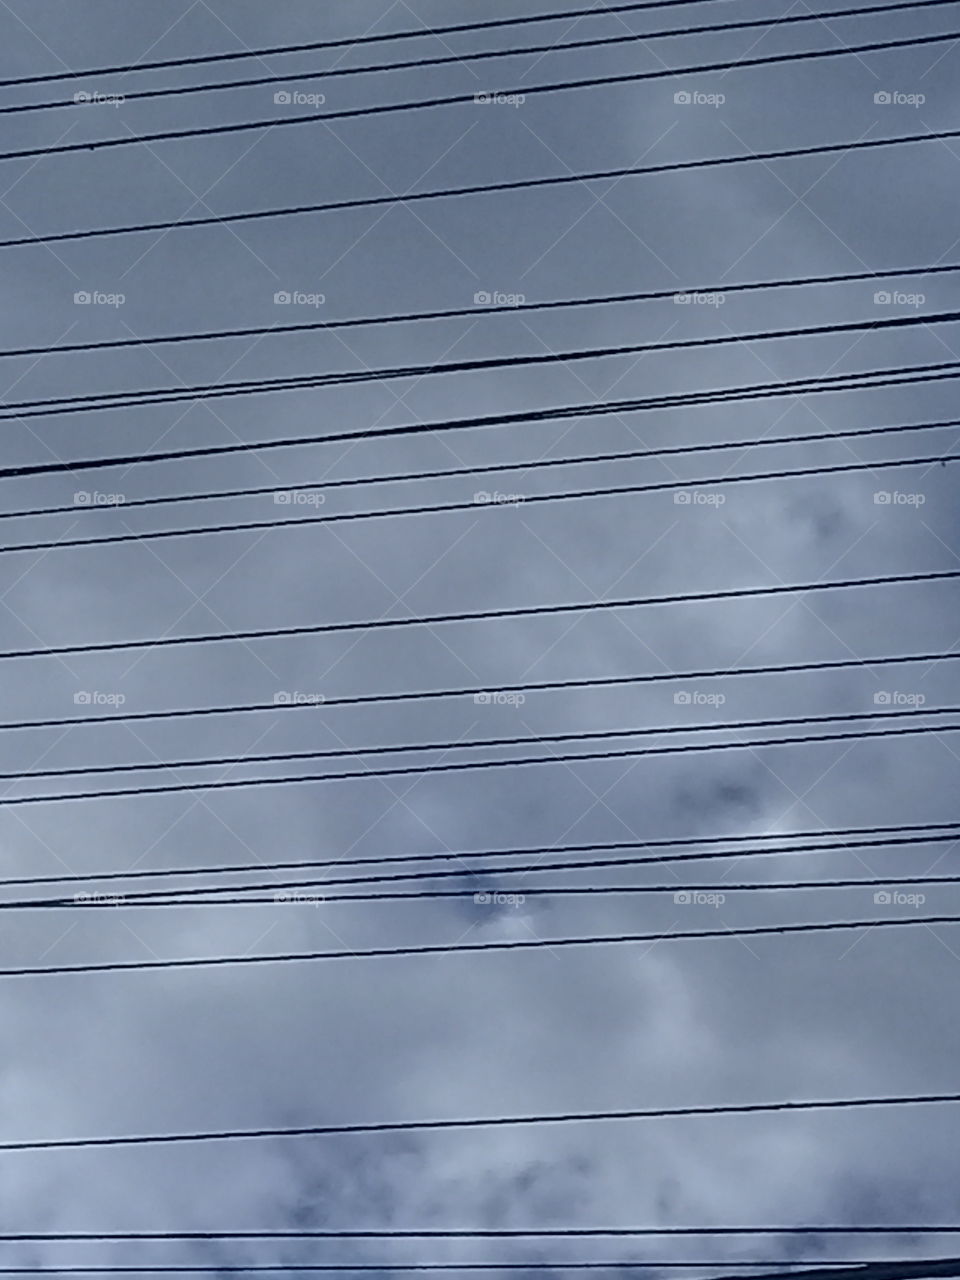 imagen de cables eléctricos de alta tensión cubriendo de rayas un cielo nublado de verano.